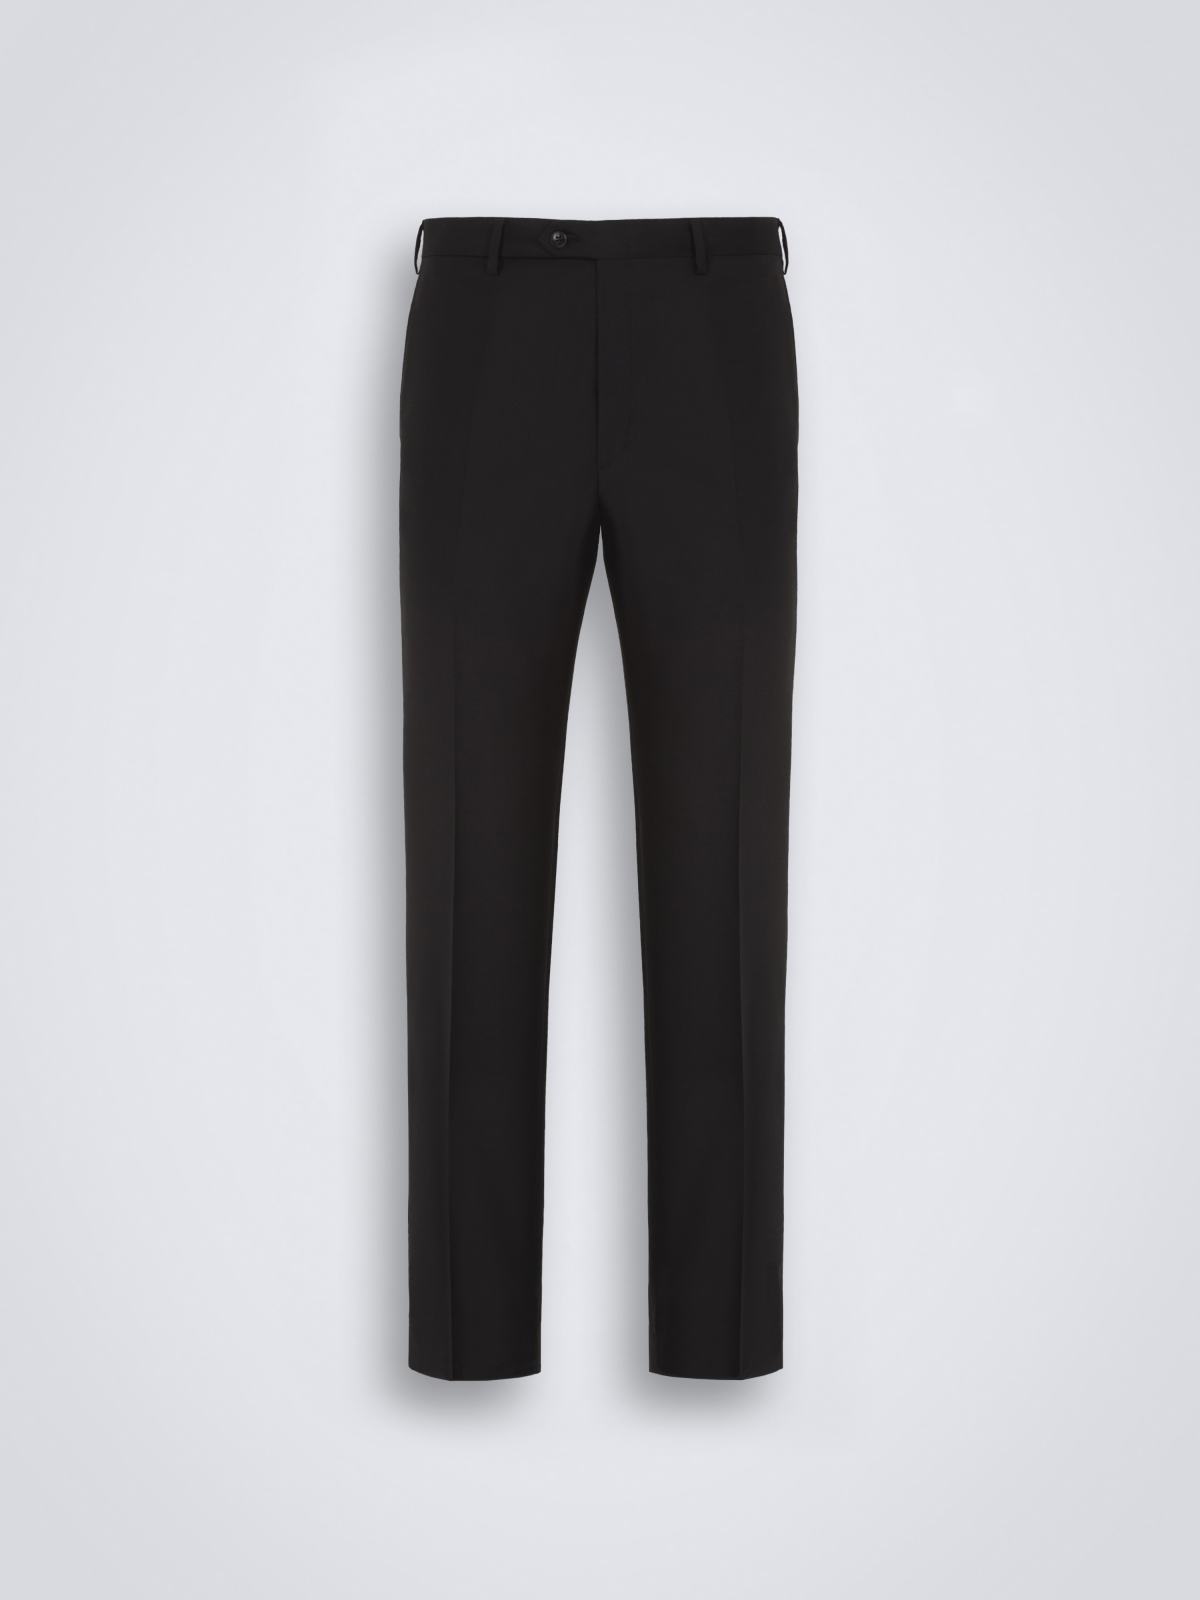 'Essential' black Tigullio trousers | Brioni® US Official Store